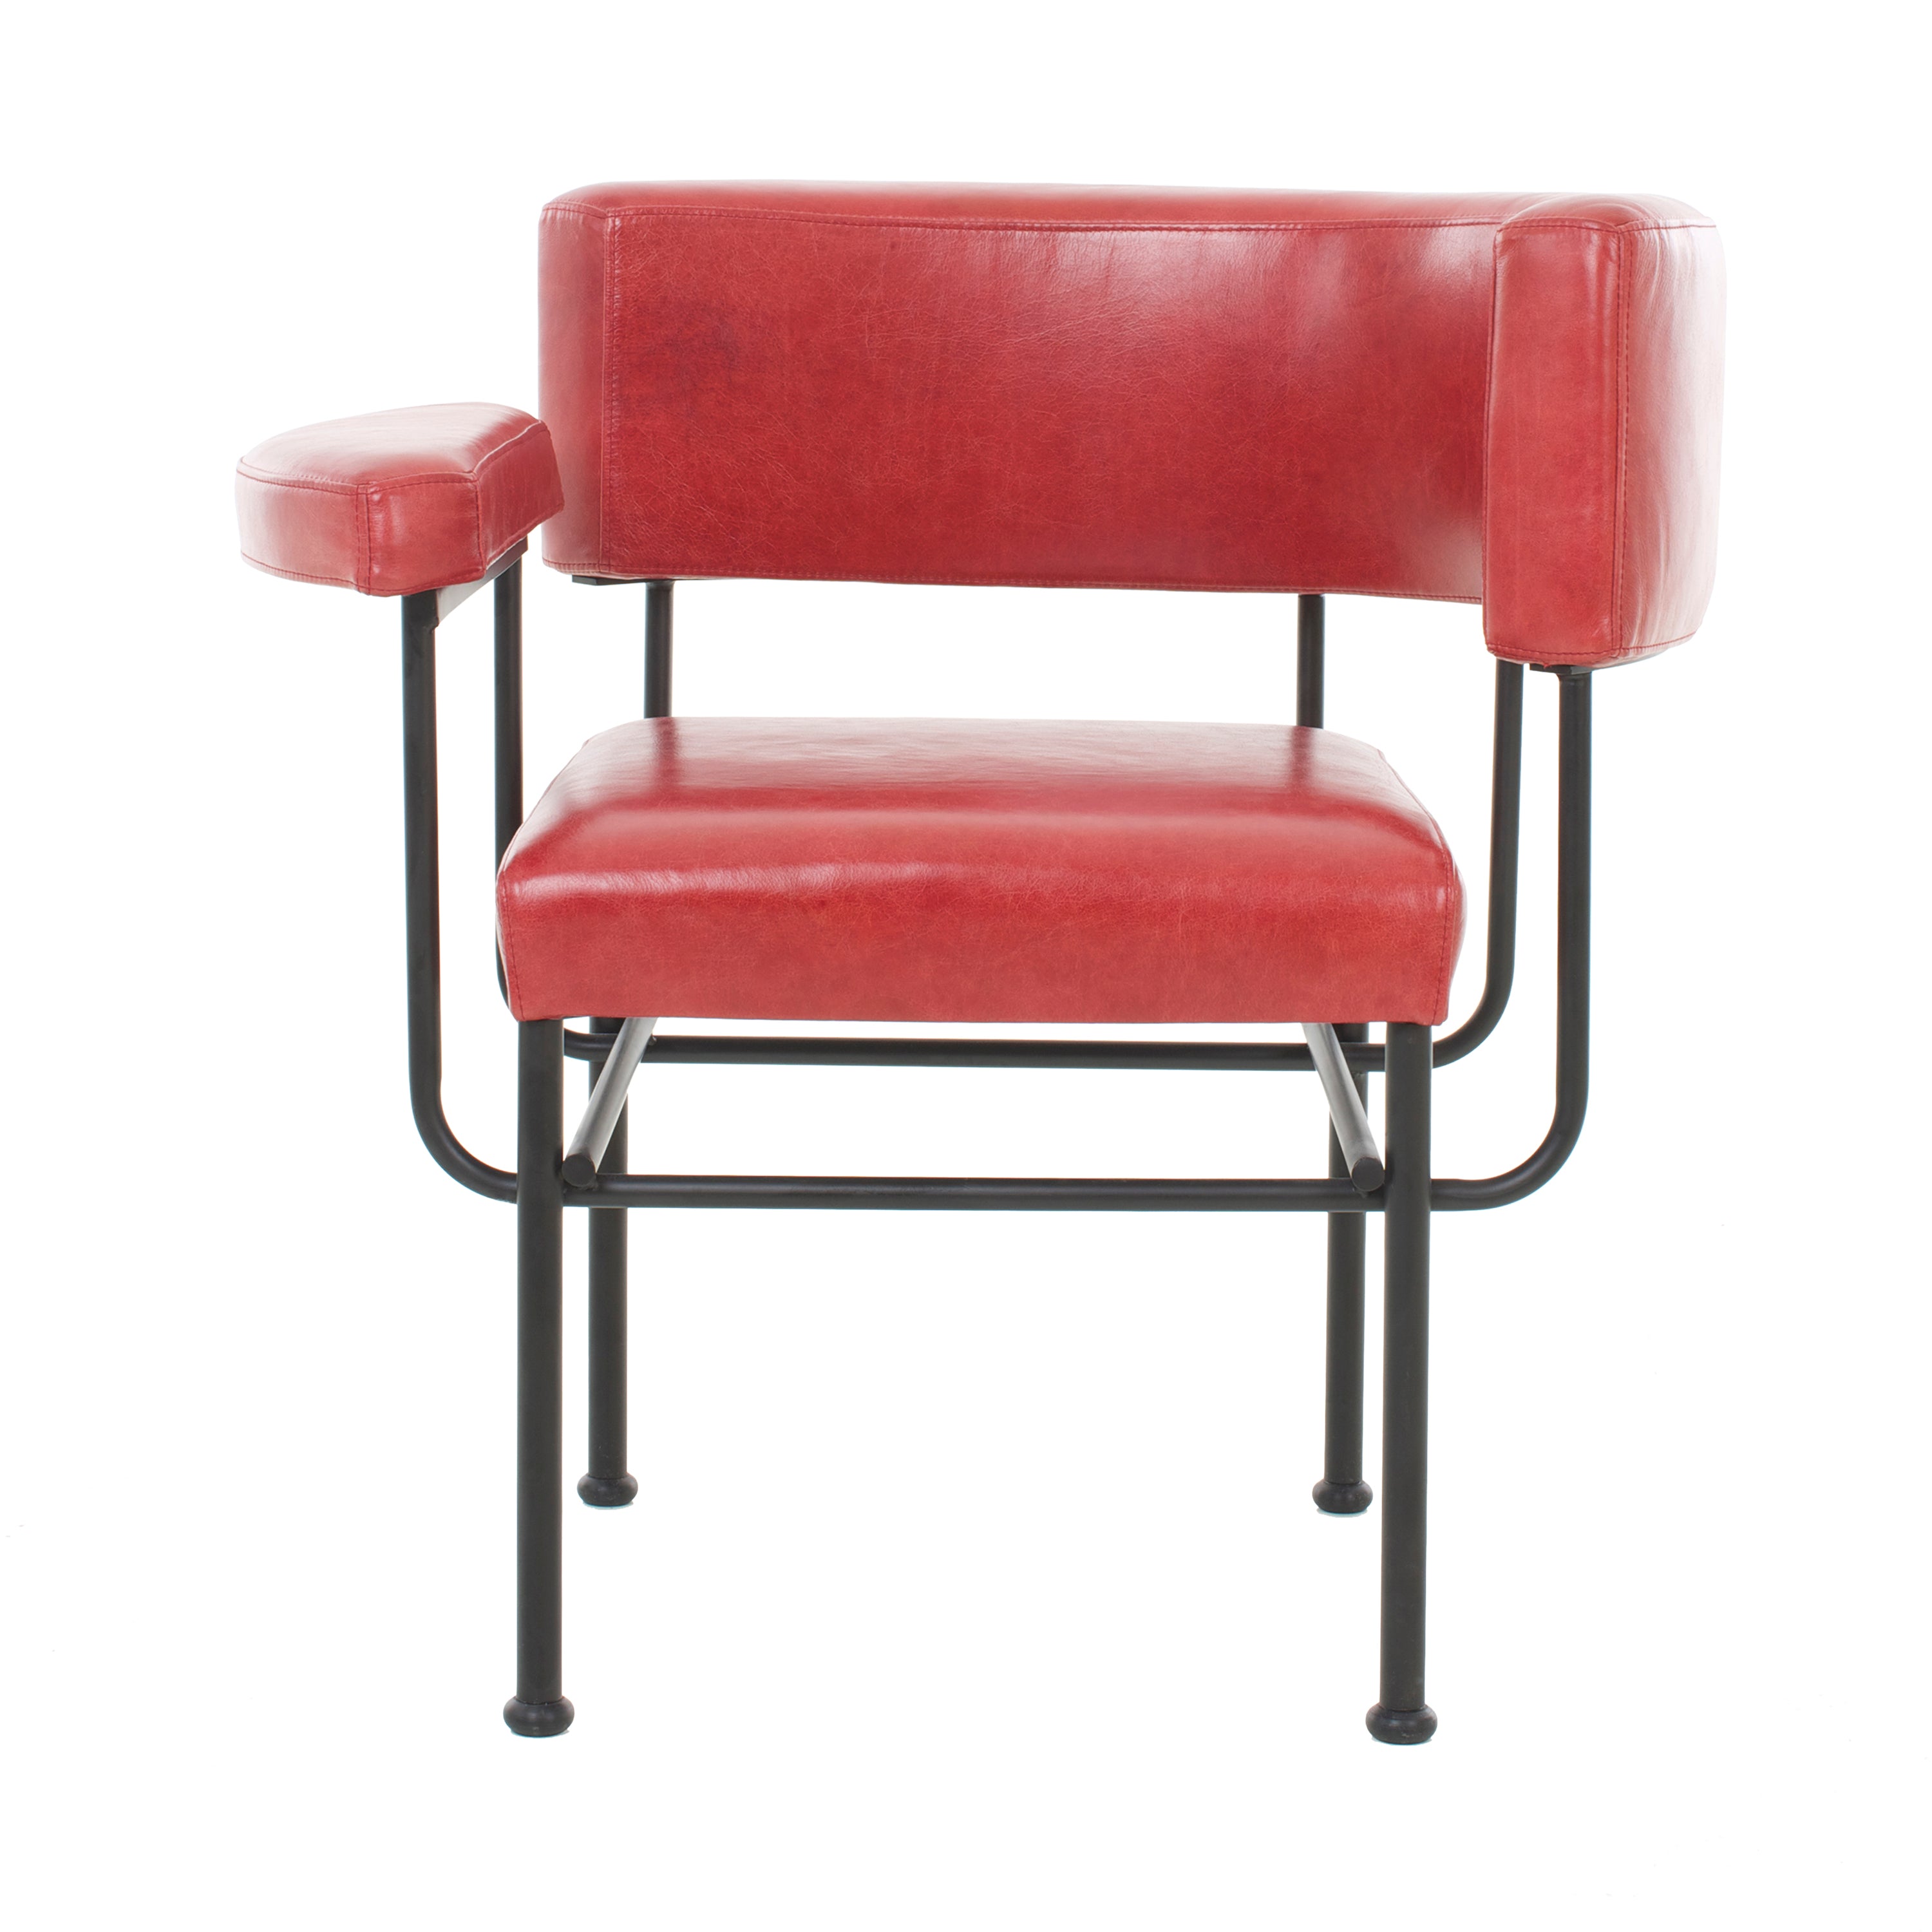 Verloren Stressvol Gehakt Cotton Club Lounge Chair | Buy Stellar Works online at A+R